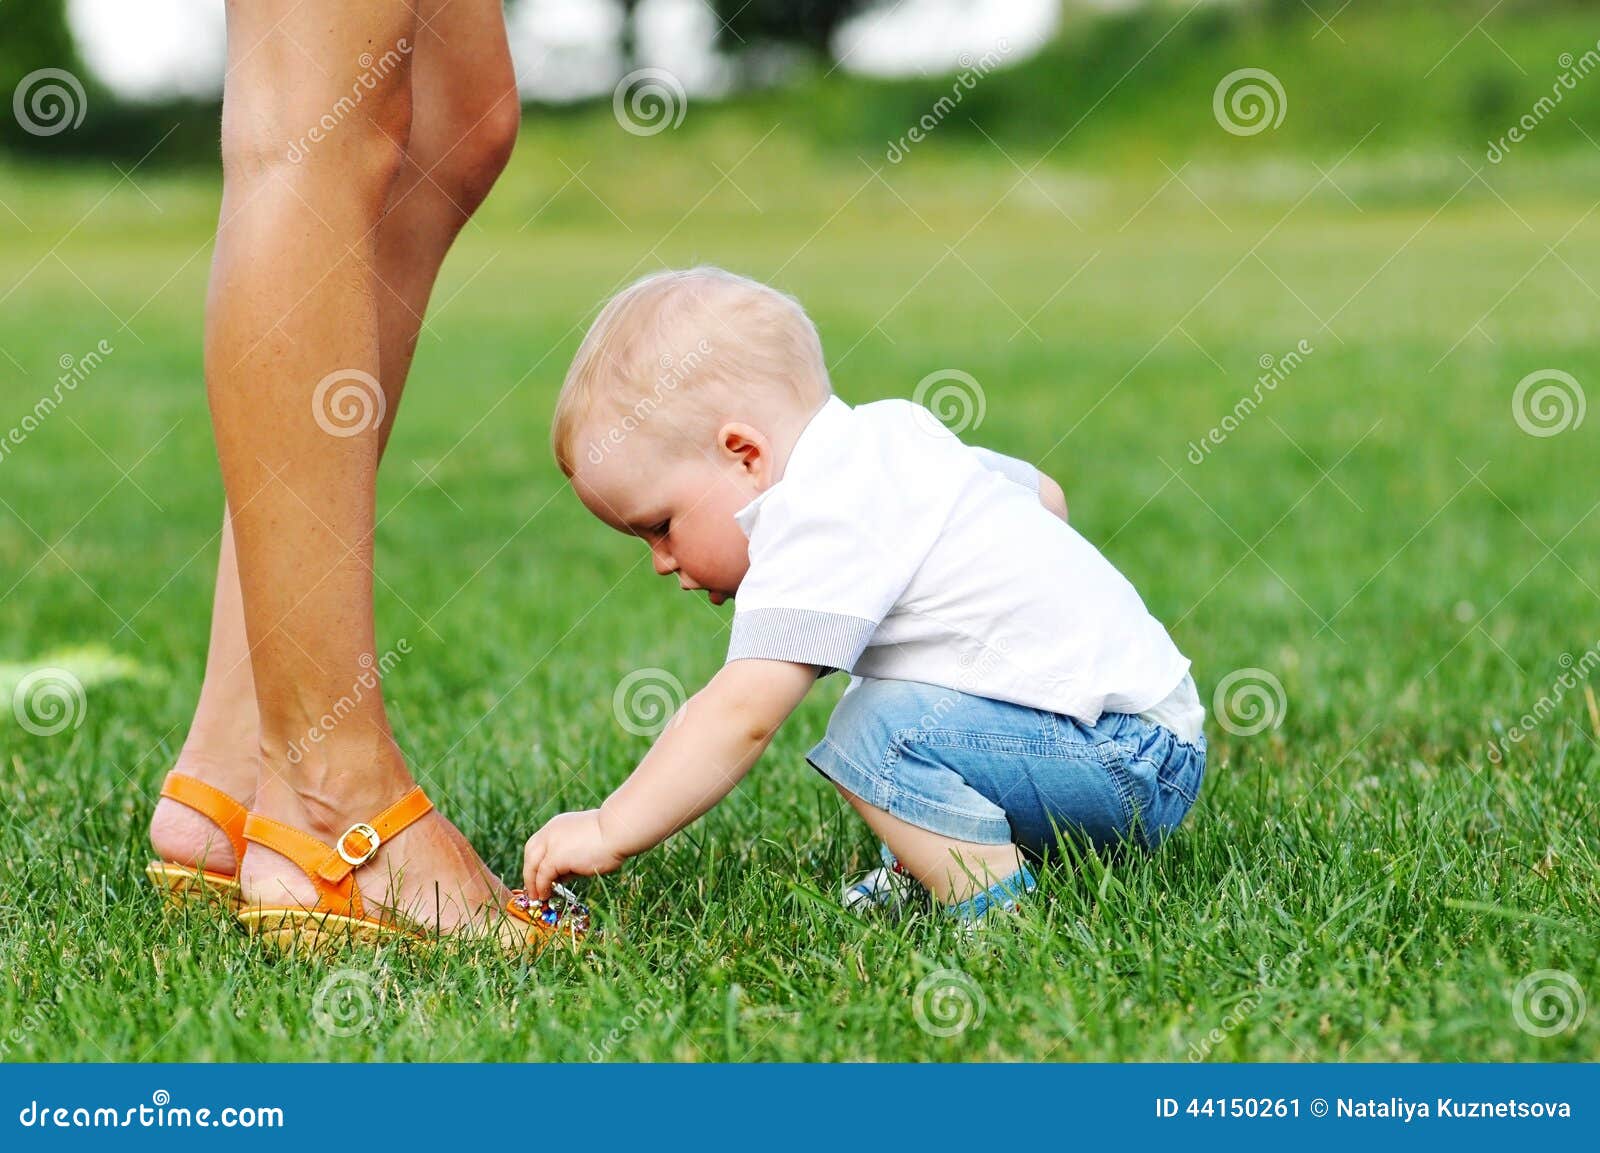 Включи мамочки ноги. Ступни детей трогать. Малыш трогает ноги. Ребенок играет с ногами мамы.